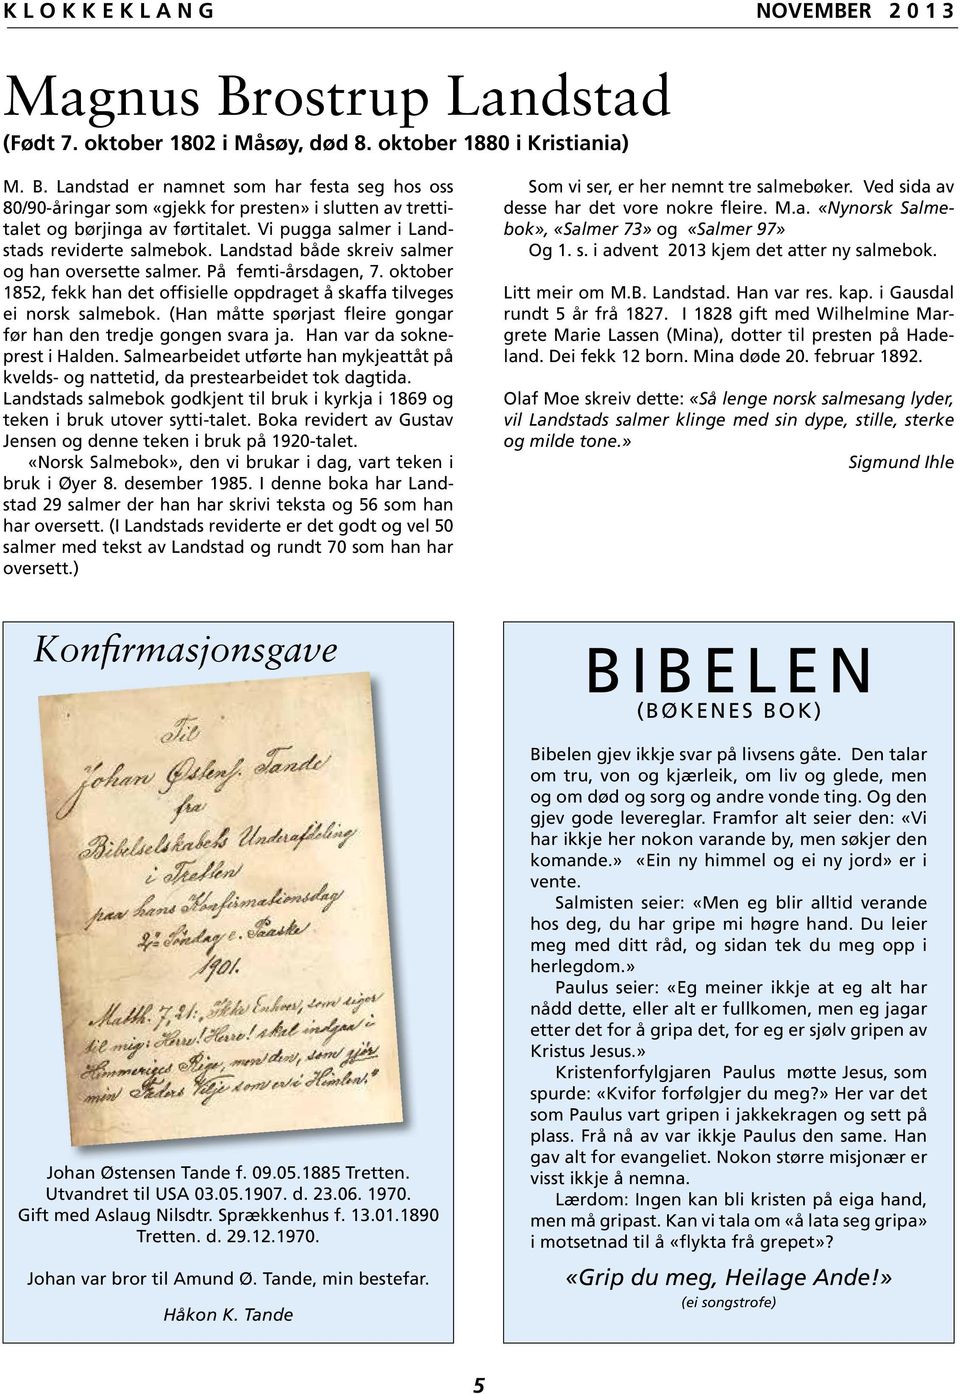 oktober 1852, fekk han det offisielle oppdraget å skaffa tilveges ei norsk salmebok. (Han måtte spørjast fleire gongar før han den tredje gongen svara ja. Han var da sokneprest i Halden.